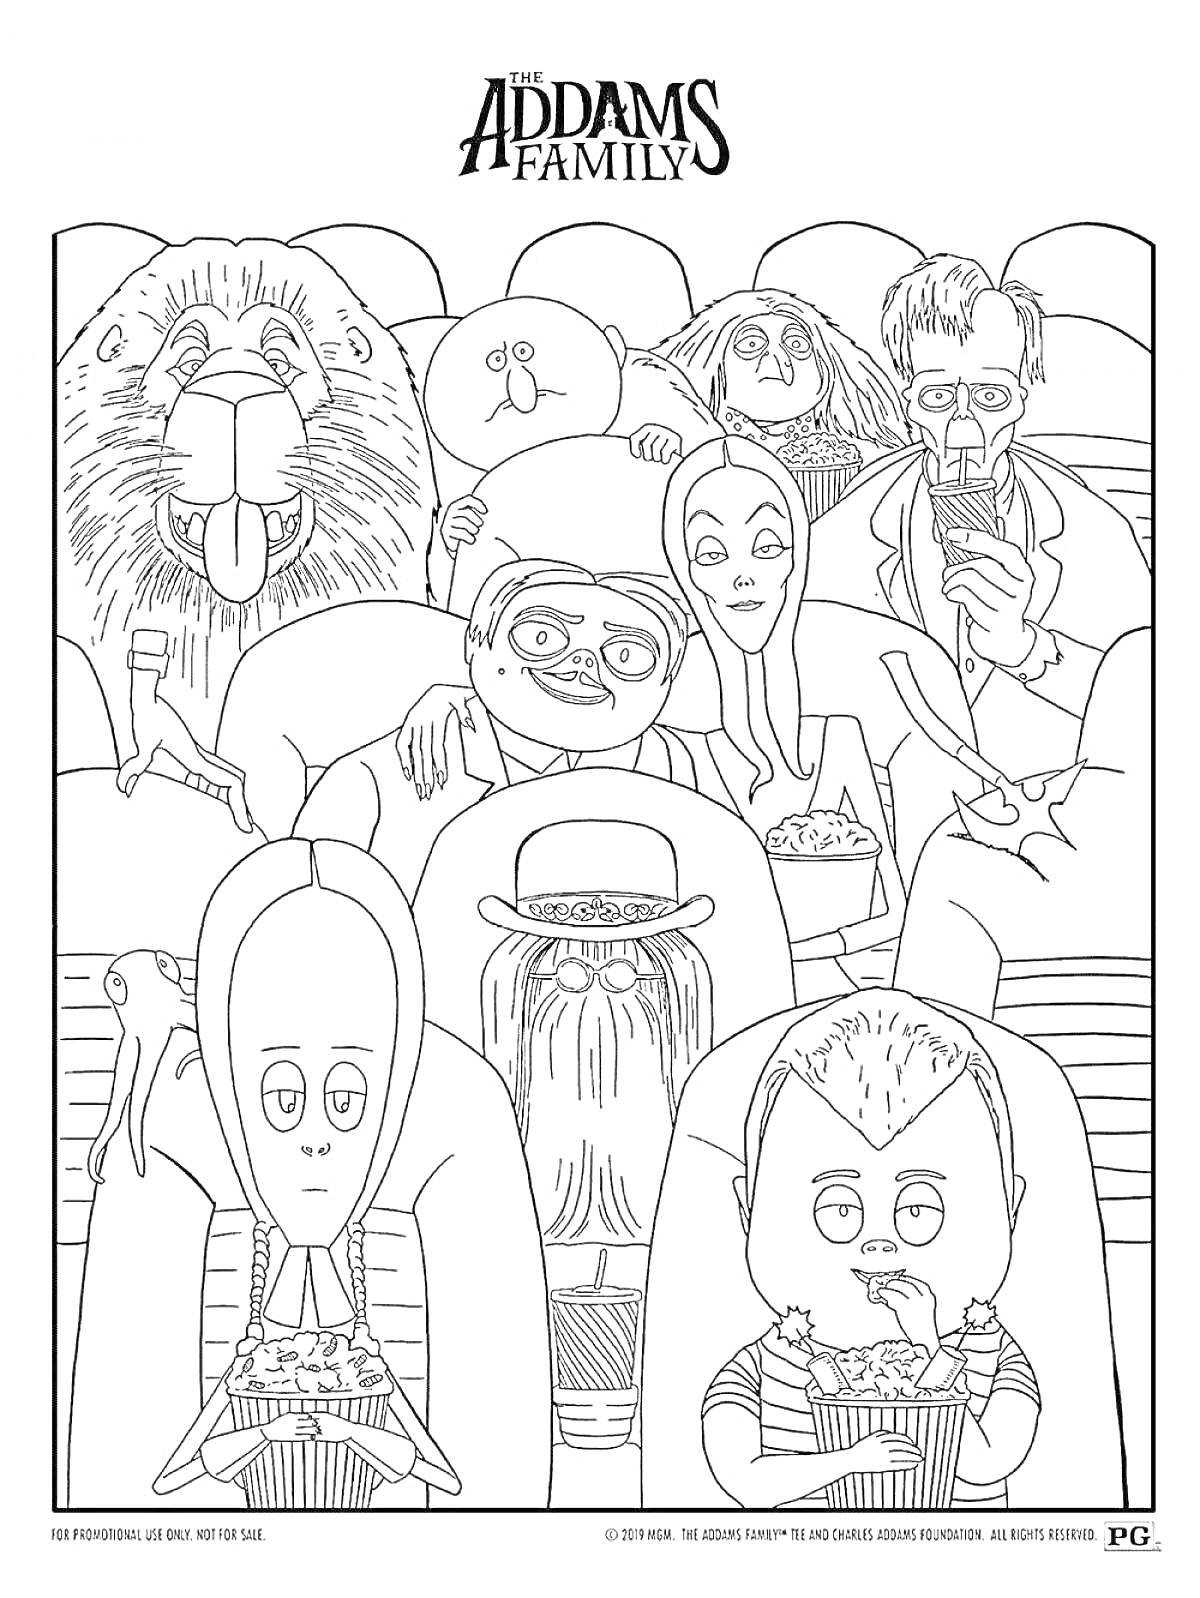 Раскраска Семейка Аддамс в кинотеатре: лев, три мужчины, женщина, волосатое существо, ребёнок